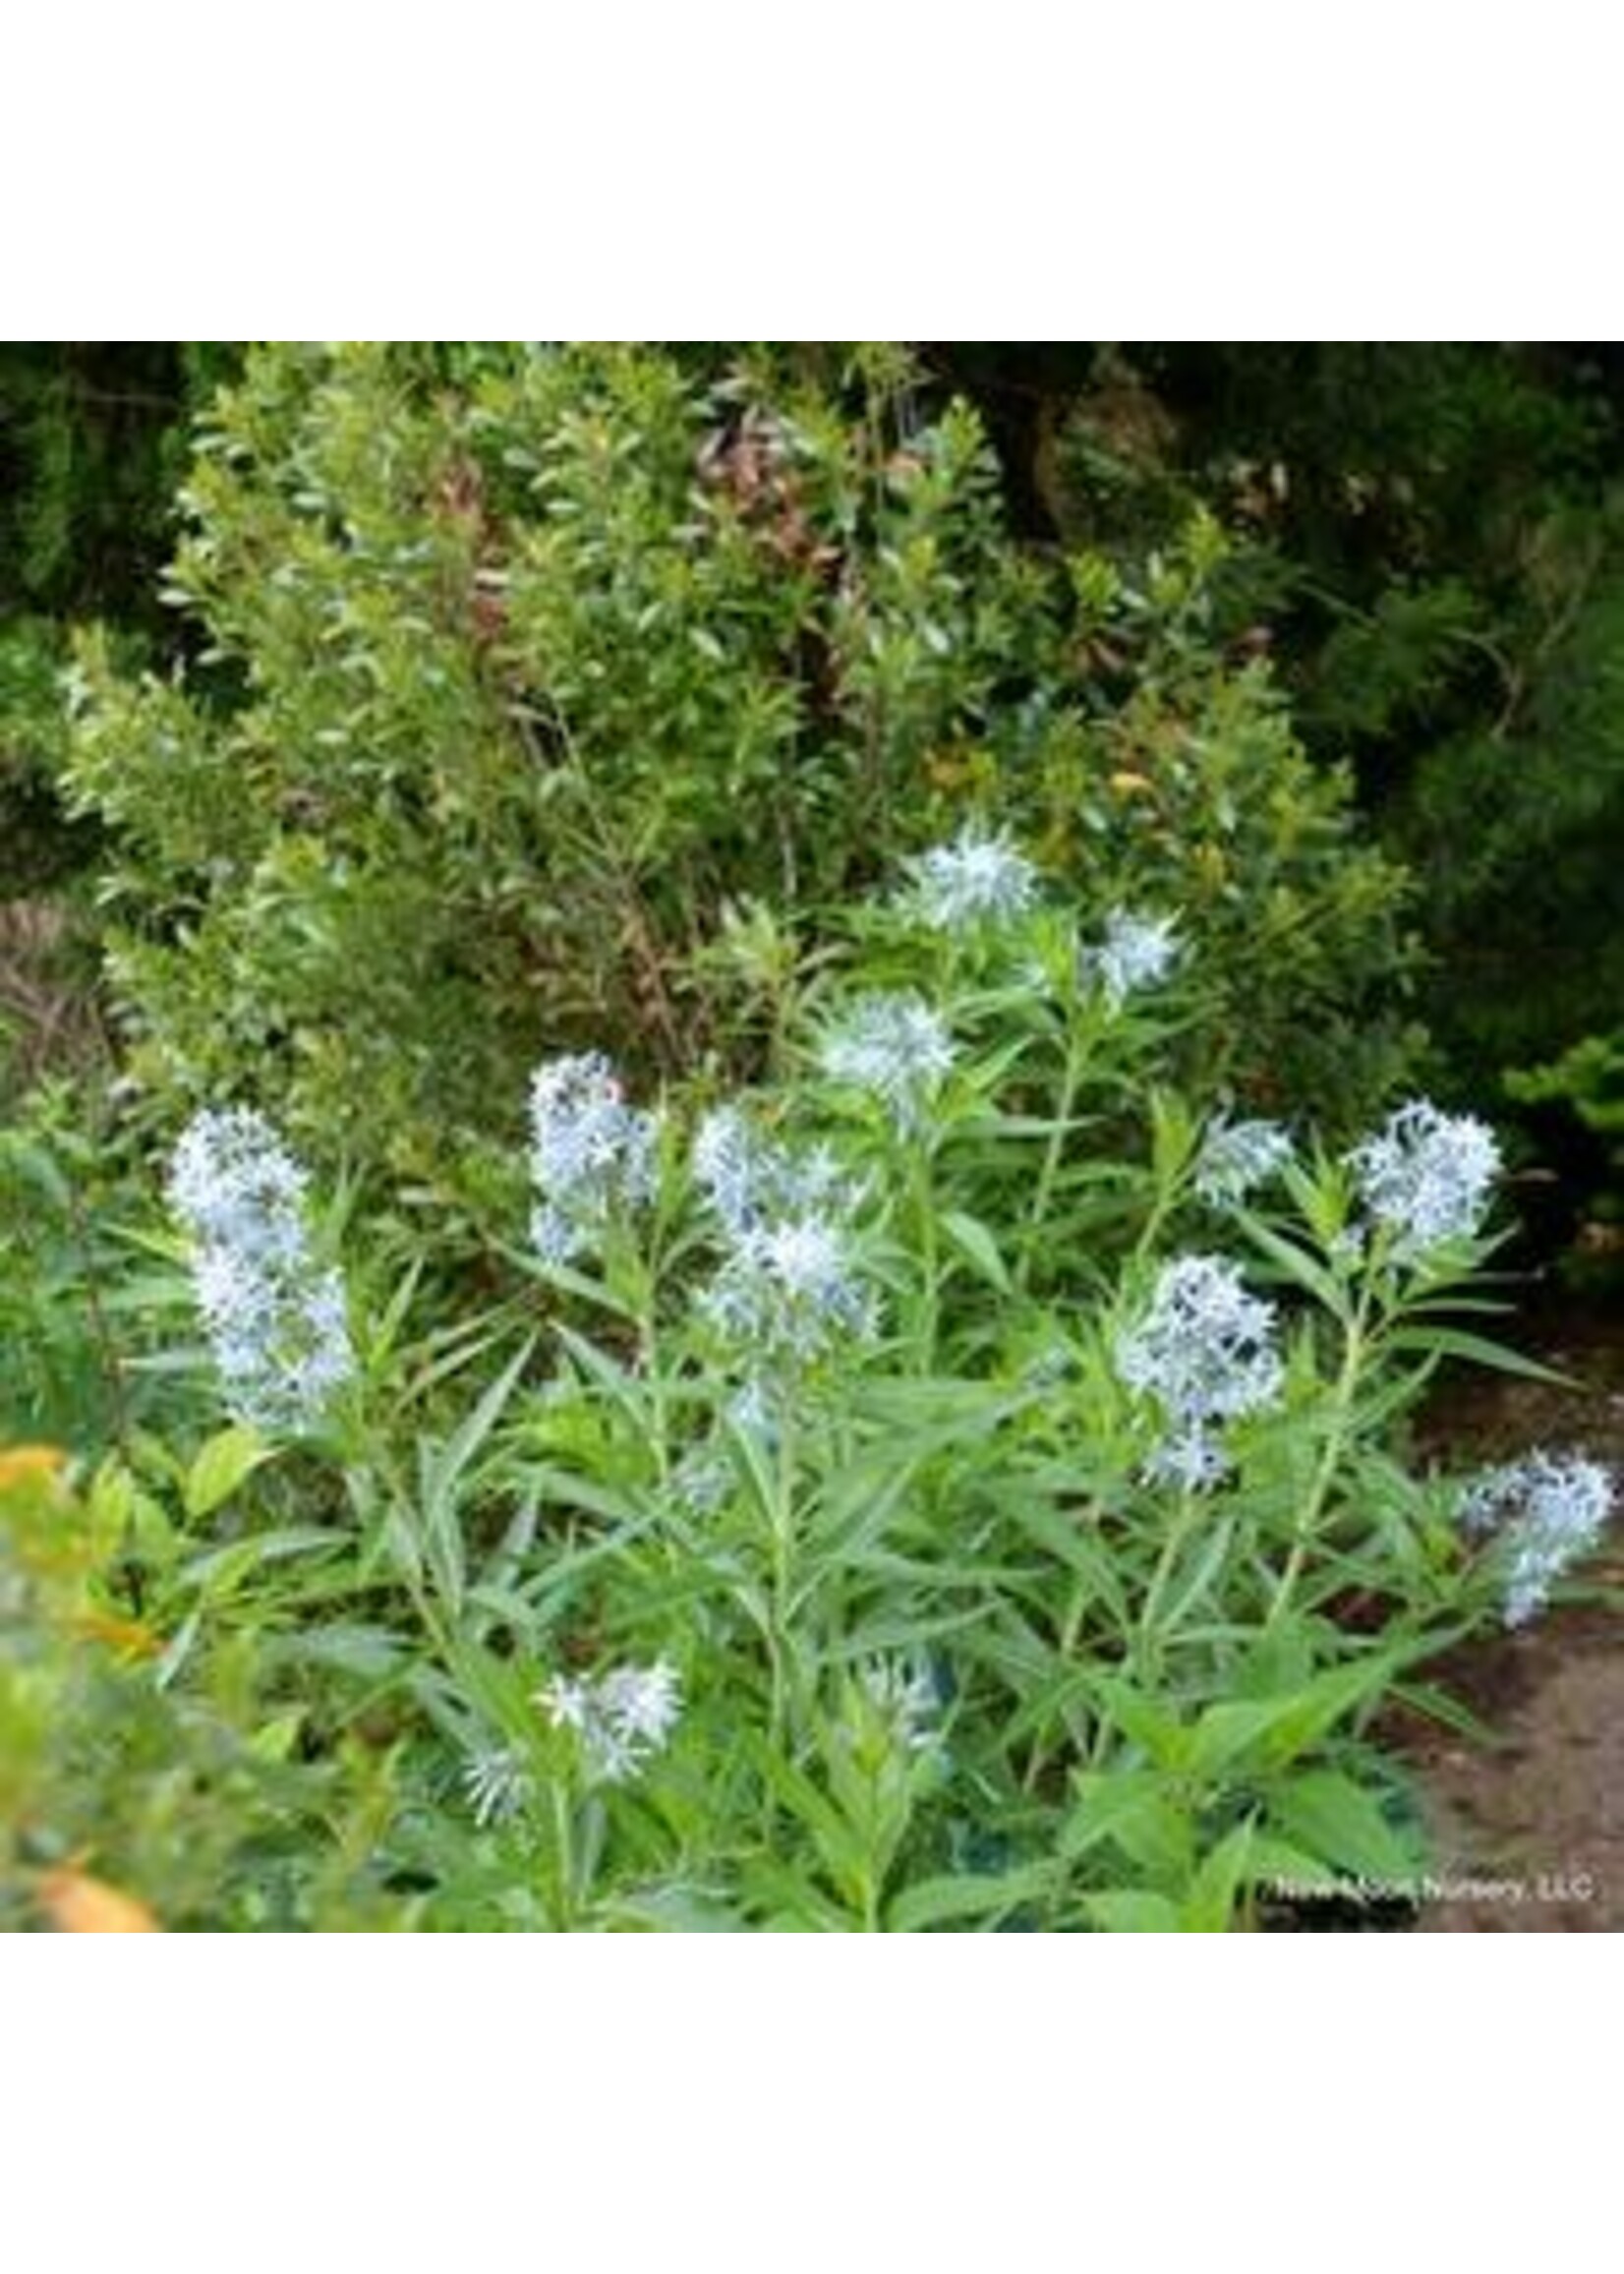 Spring Bloom Amsonia illustris, Shining bluestar #1